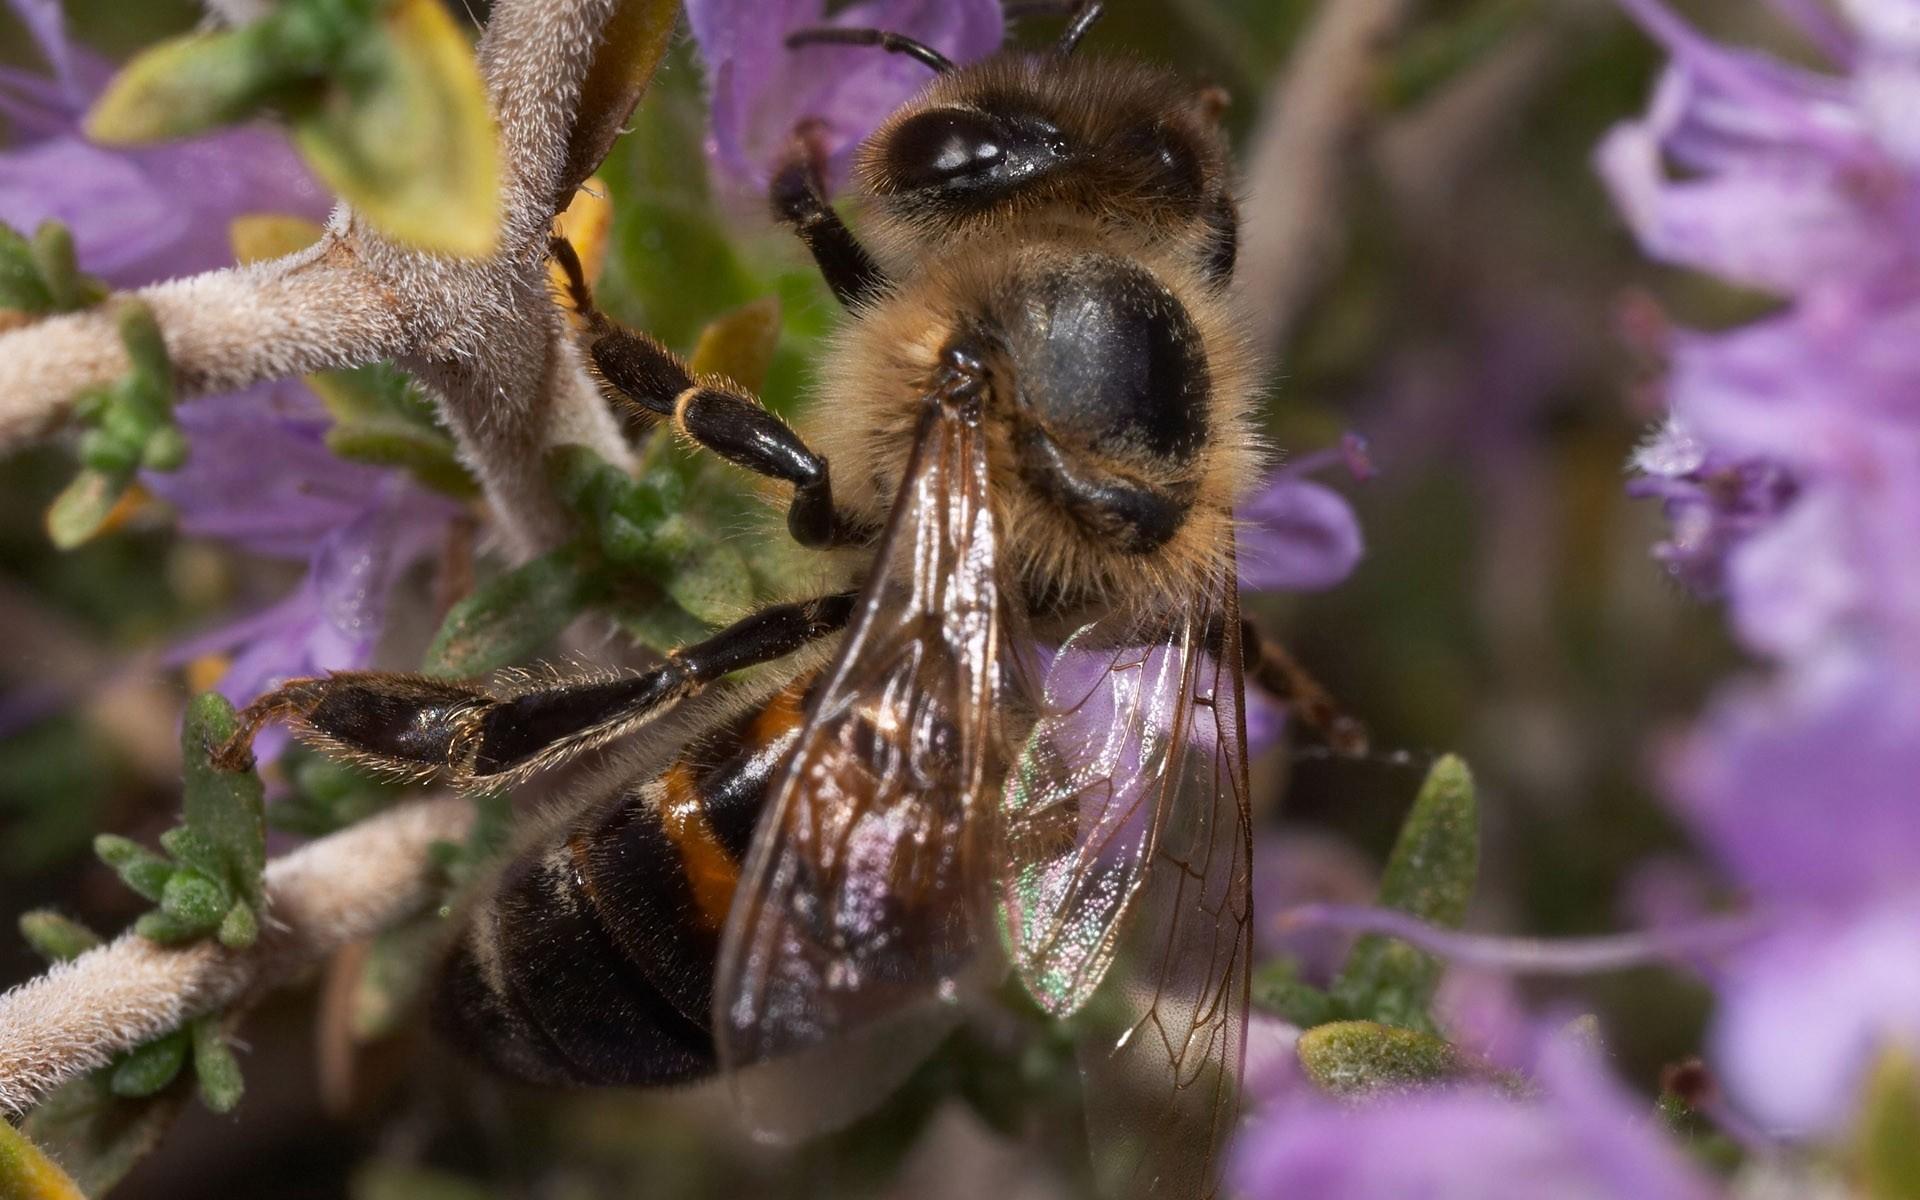 高清蜜蜂采蜜时拍摄的图片大全10